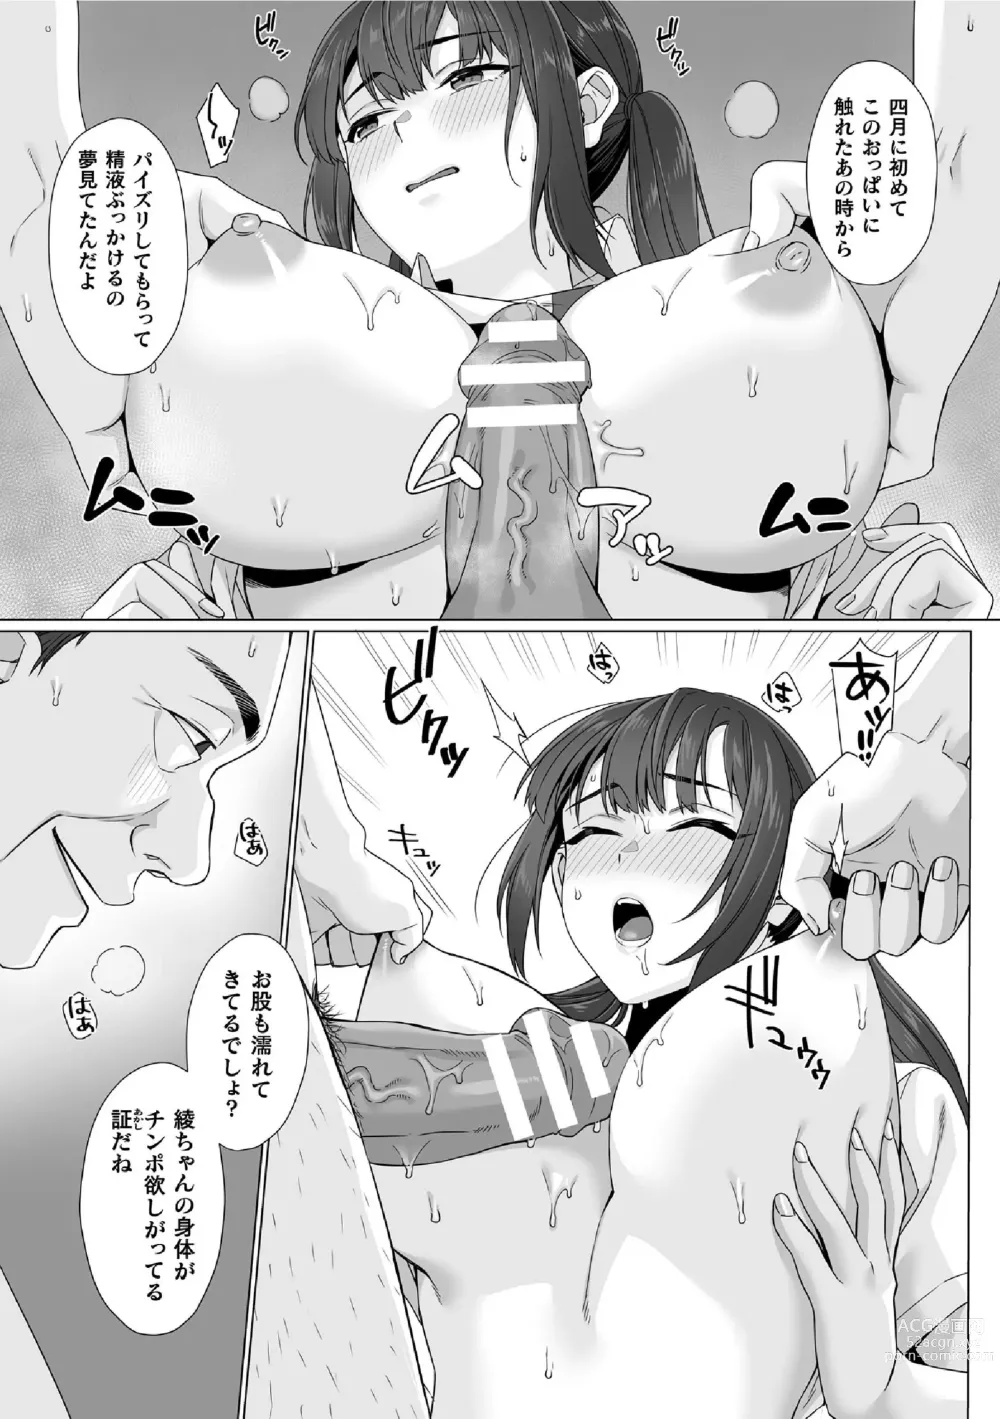 Page 7 of manga Junboku Joshikousei wa Oyaji Iro ni Somerarete Comic Ban Ch. 6